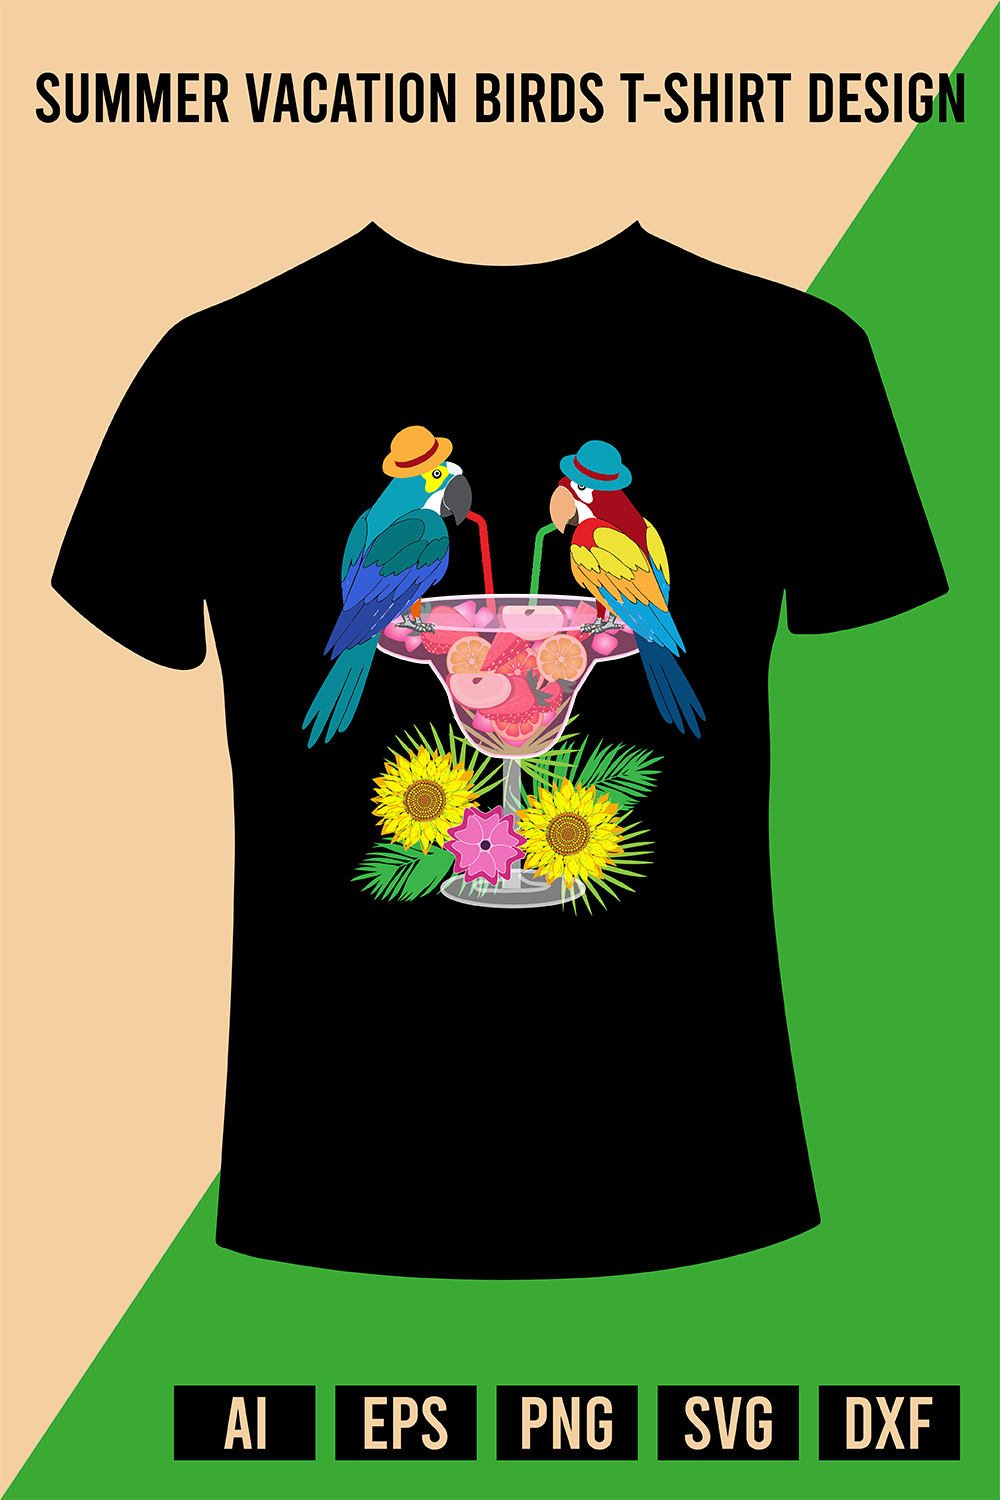 Bird T-shirt Designs - 66+ Bird T-shirt Ideas in 2023